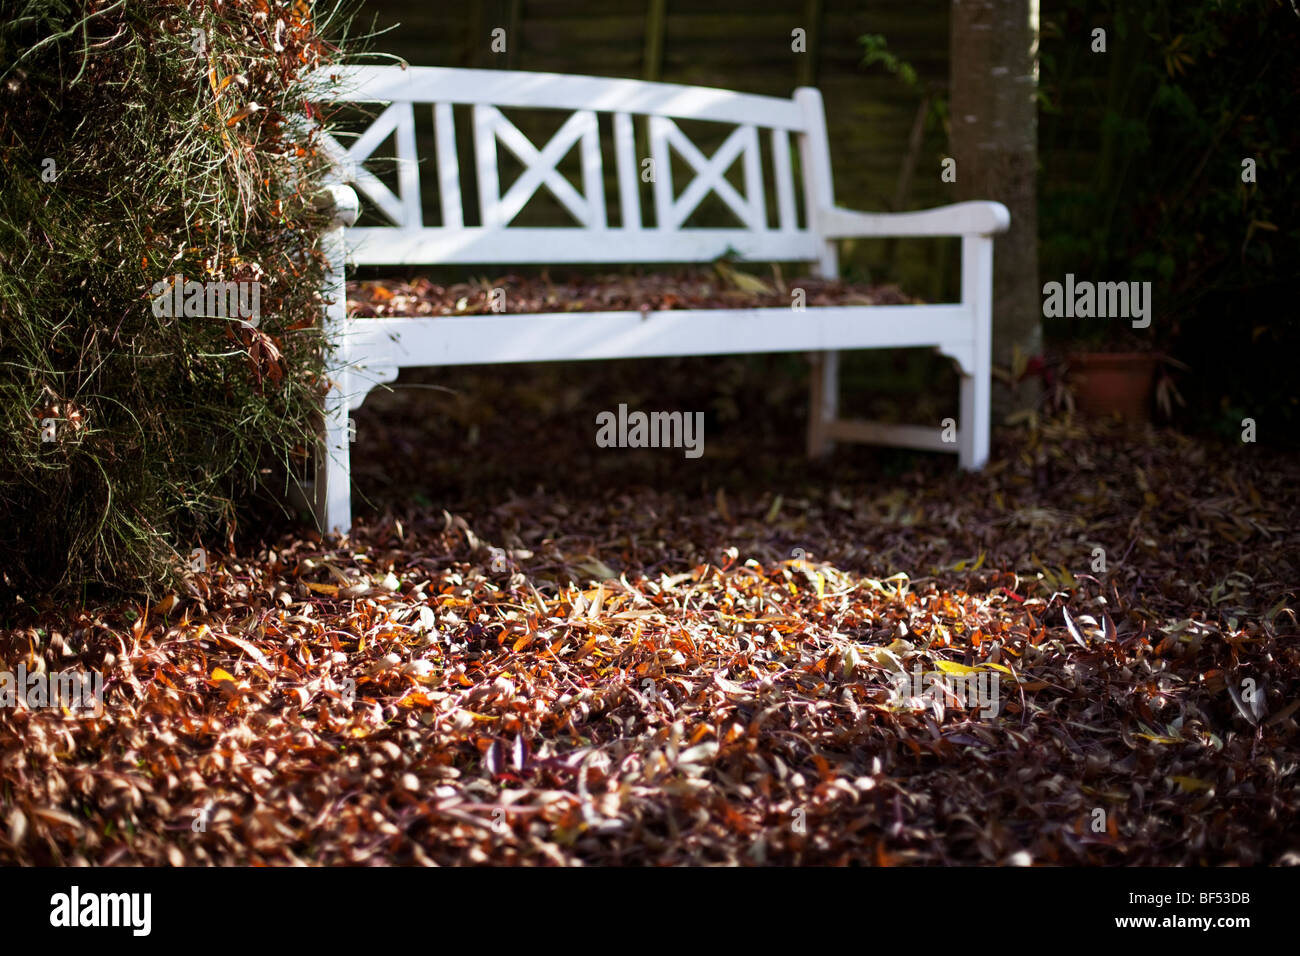 Eine Holzbank in der Ecke eines vorstädtischen Gartens im Herbst in Redditch, Worcestershire, UK Stockfoto